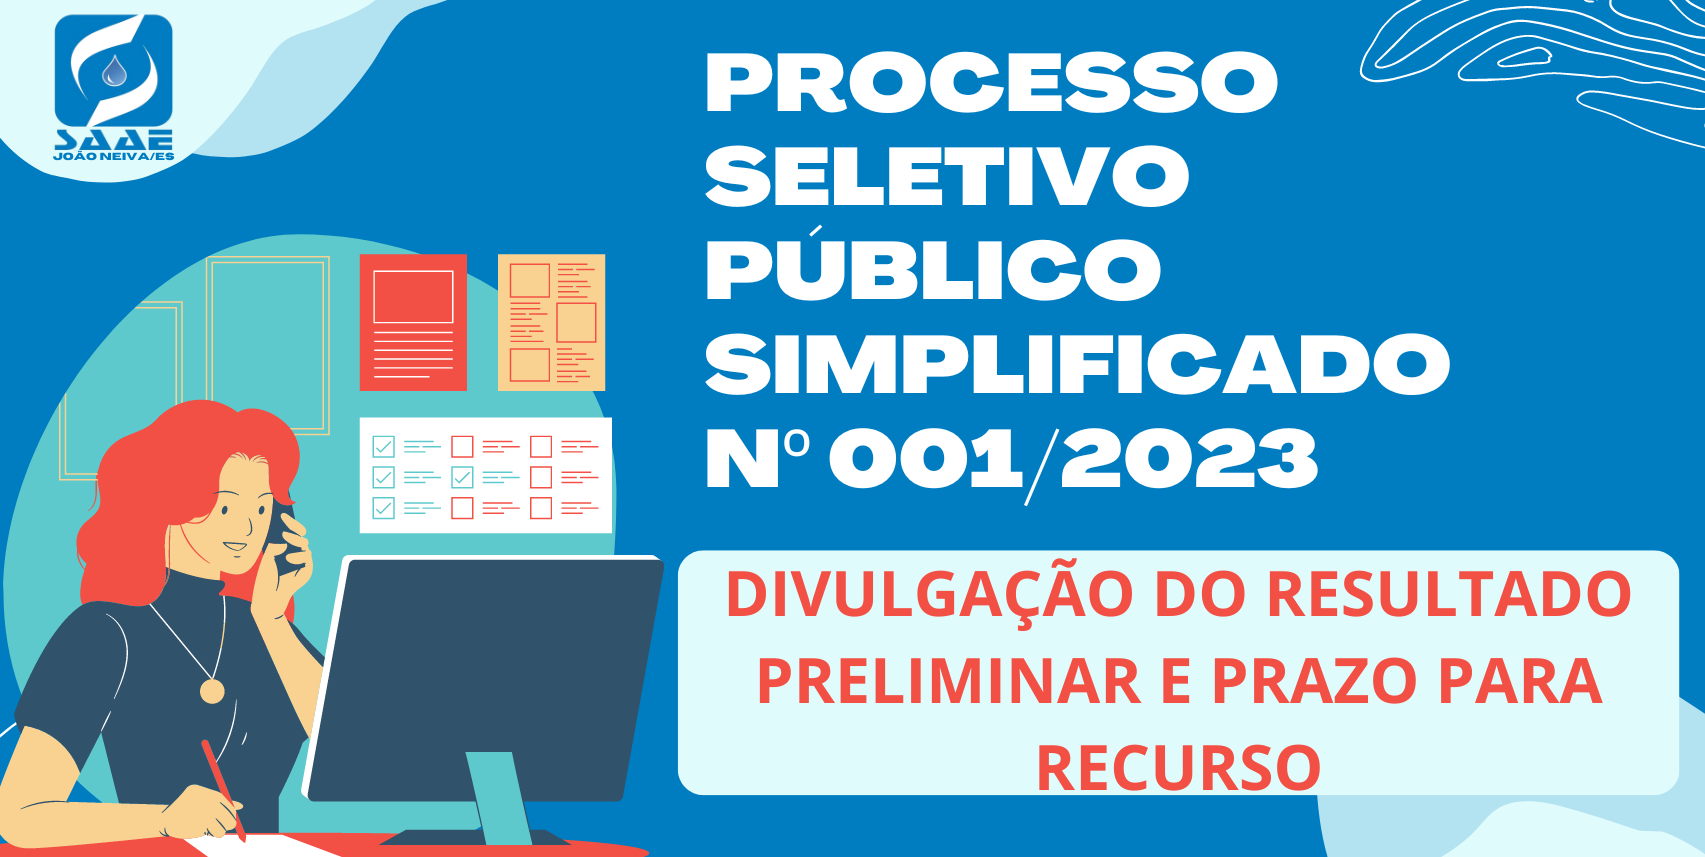 RESULTADO PRELIMINAR - PROCESSO SELETIVO PÚBLICO SIMPLIFICADO Nº 001/2023